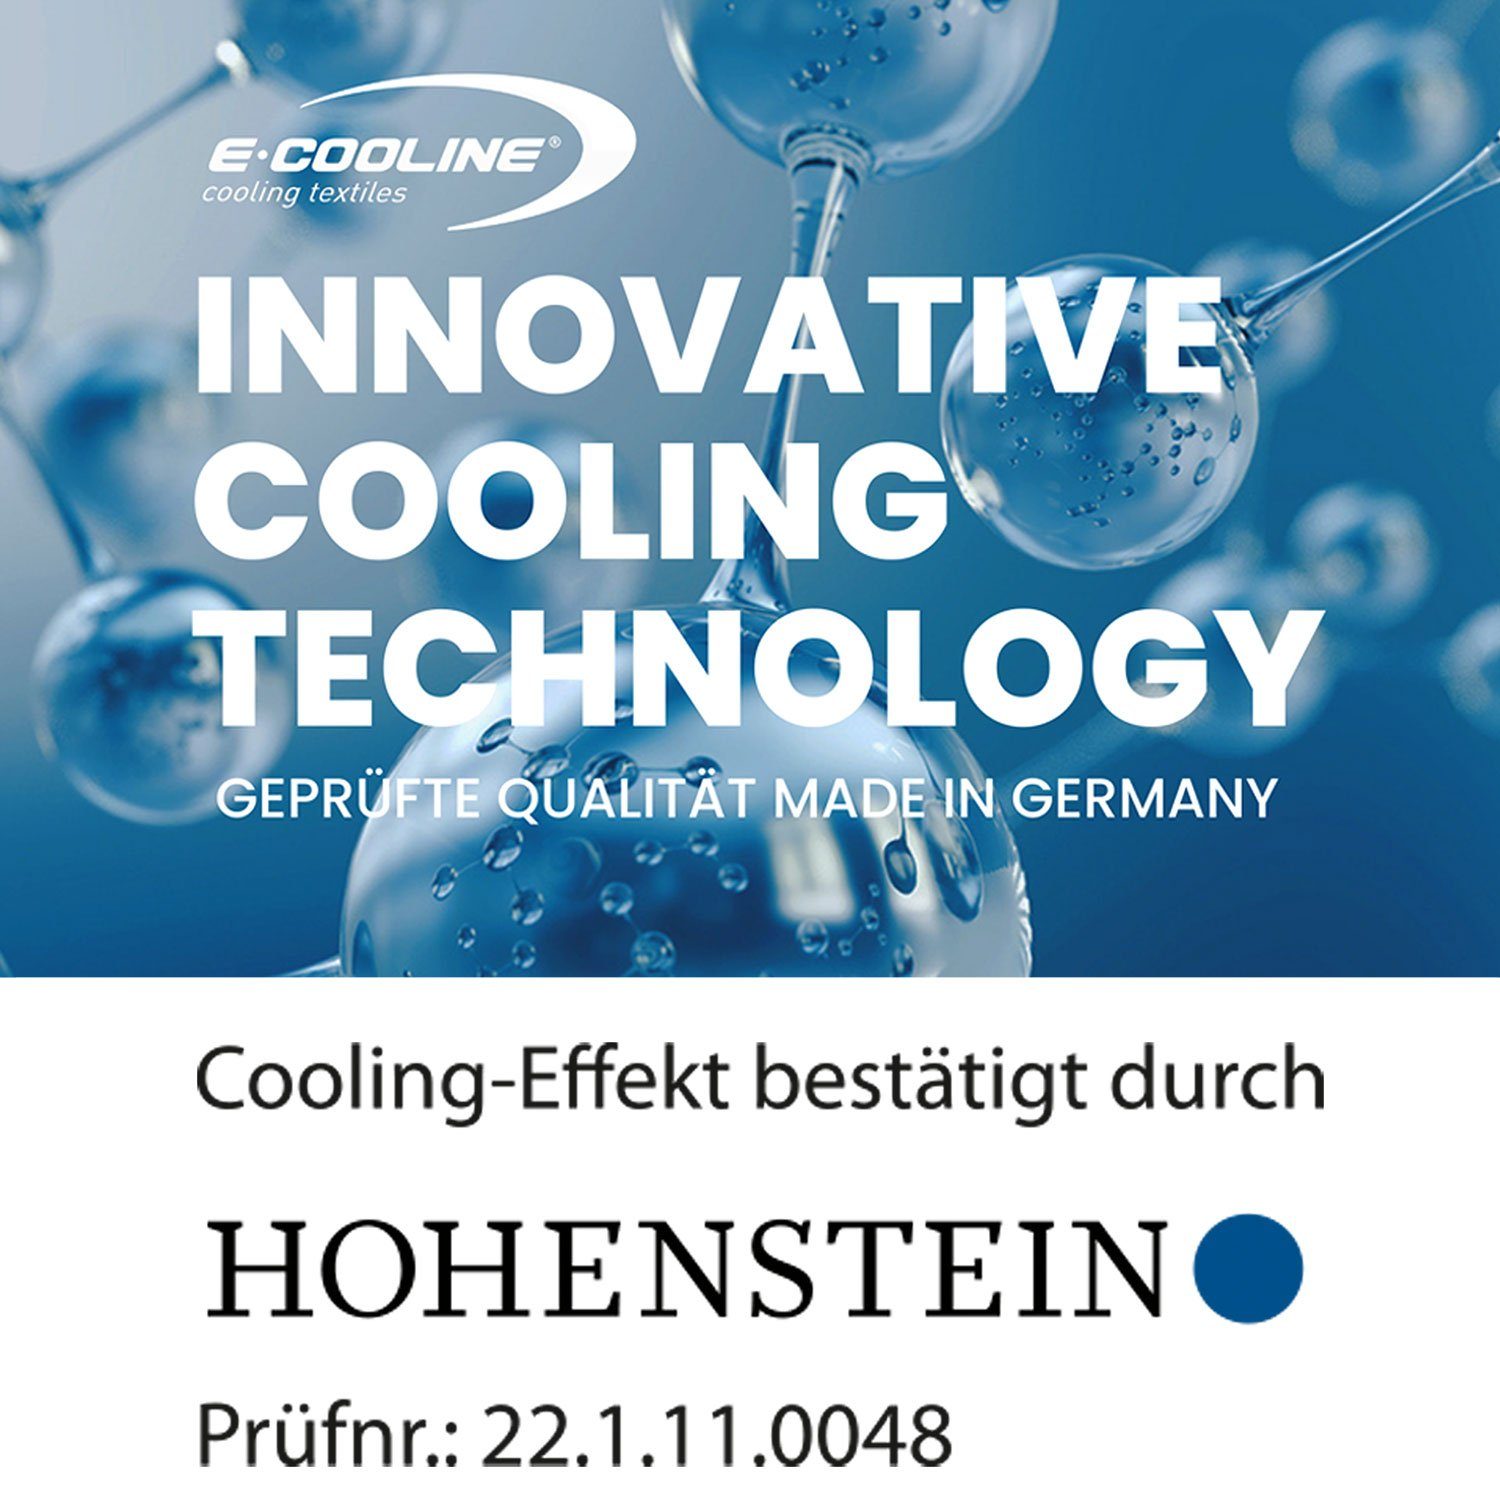 Kühlhose durch Powercool - mit Aktivierung Radlerhose E.COOLINE SX3 Wasser Kühlung